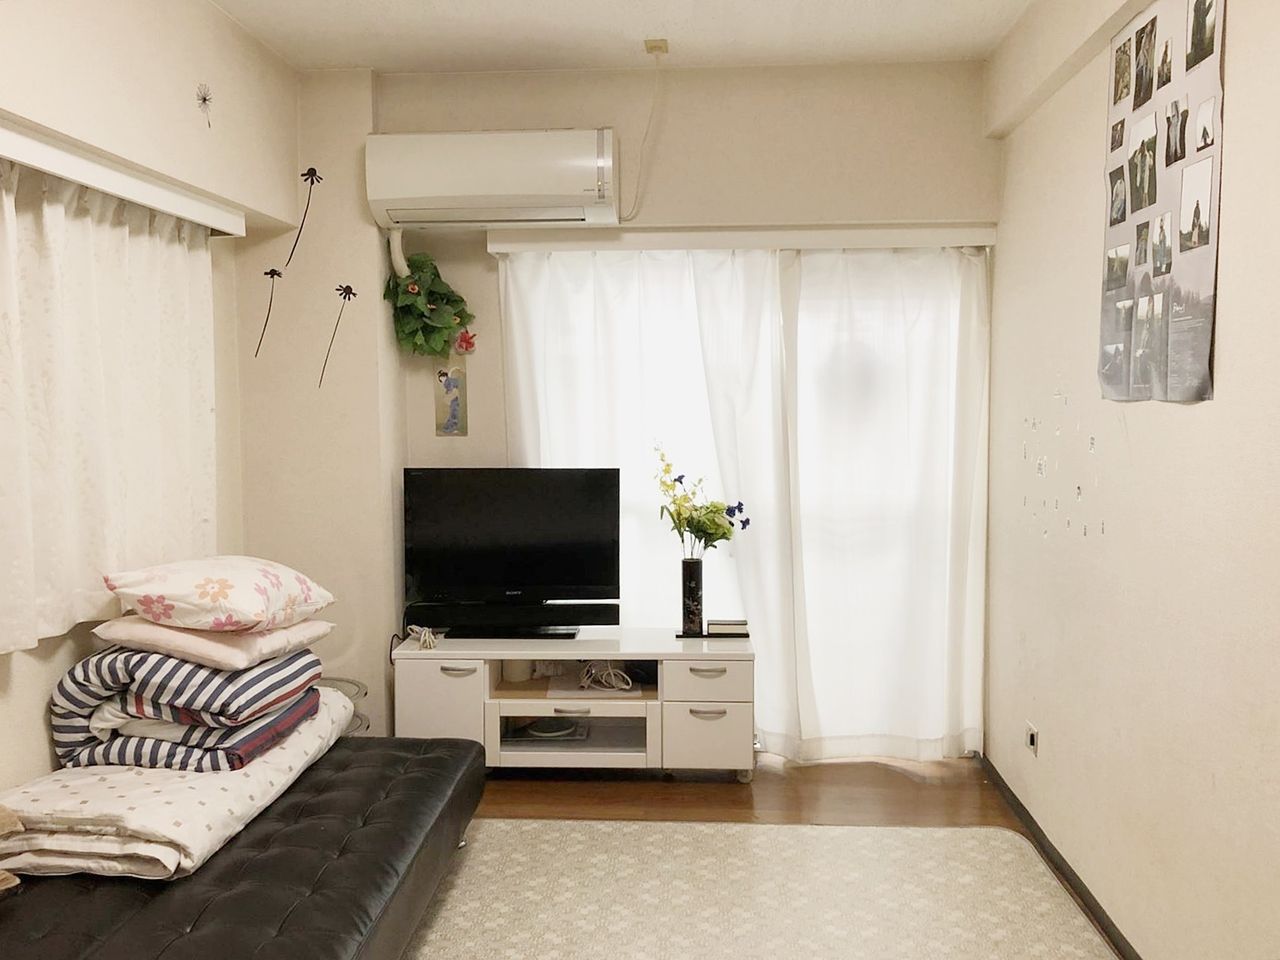 新宿駅徒歩2分でとても便利な立地です。 所有者のセカンドハウスだったので家具家電付きですぐ入居できます。ＳＯＨＯ利用等もご相談ください